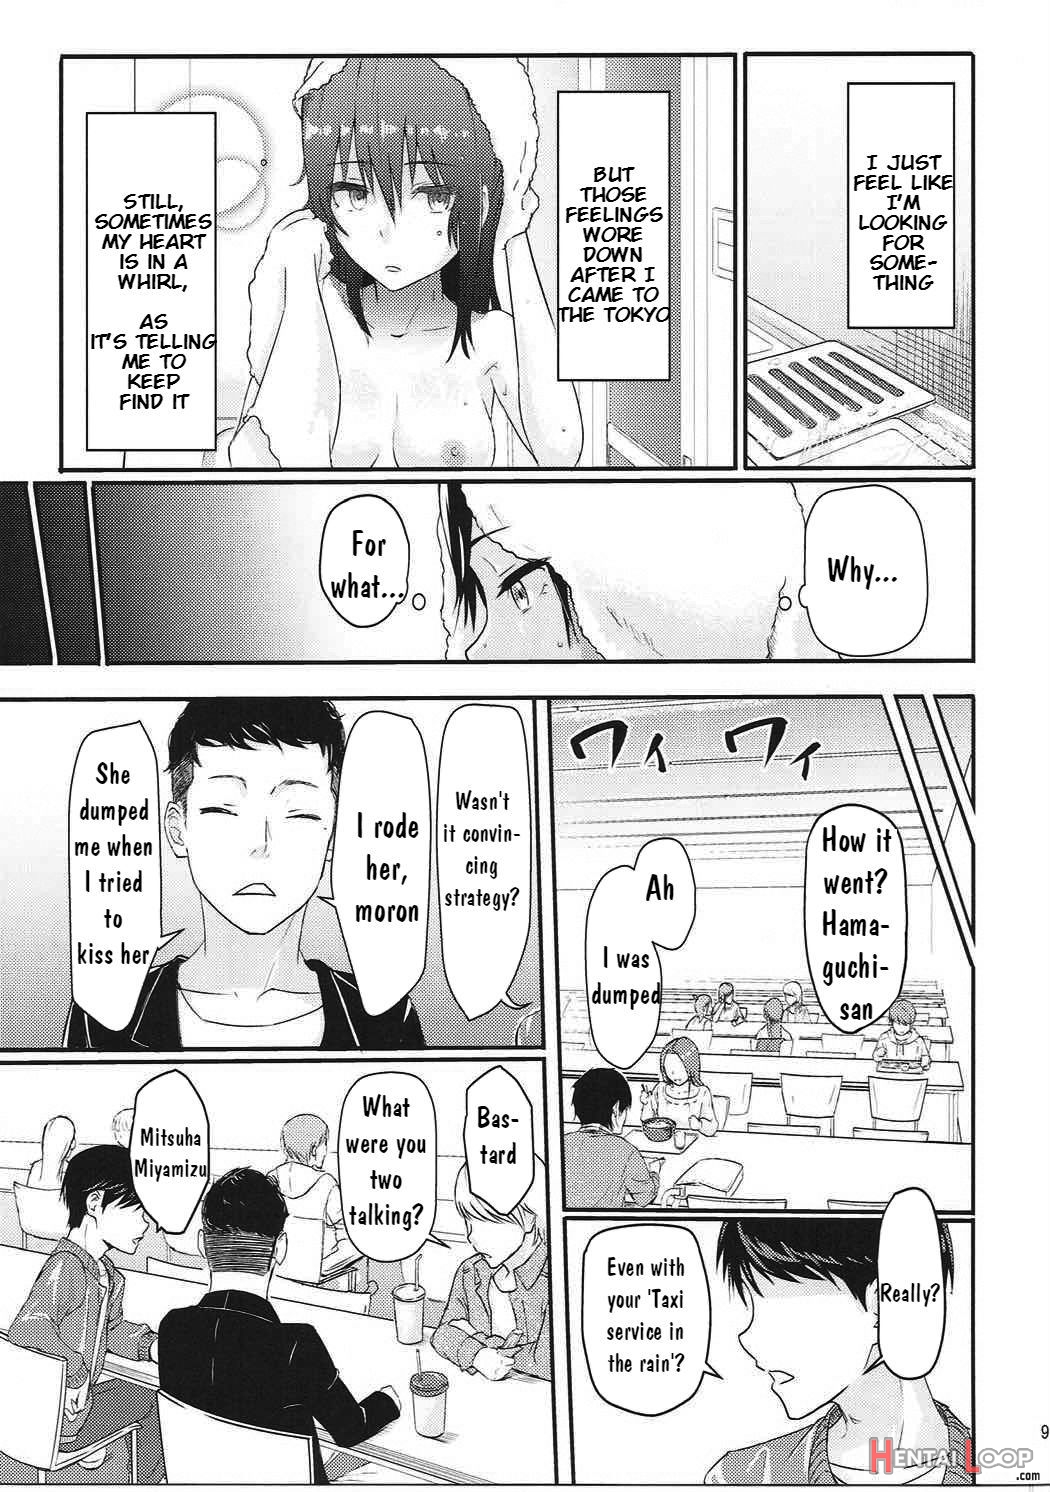 Mitsuha page 8